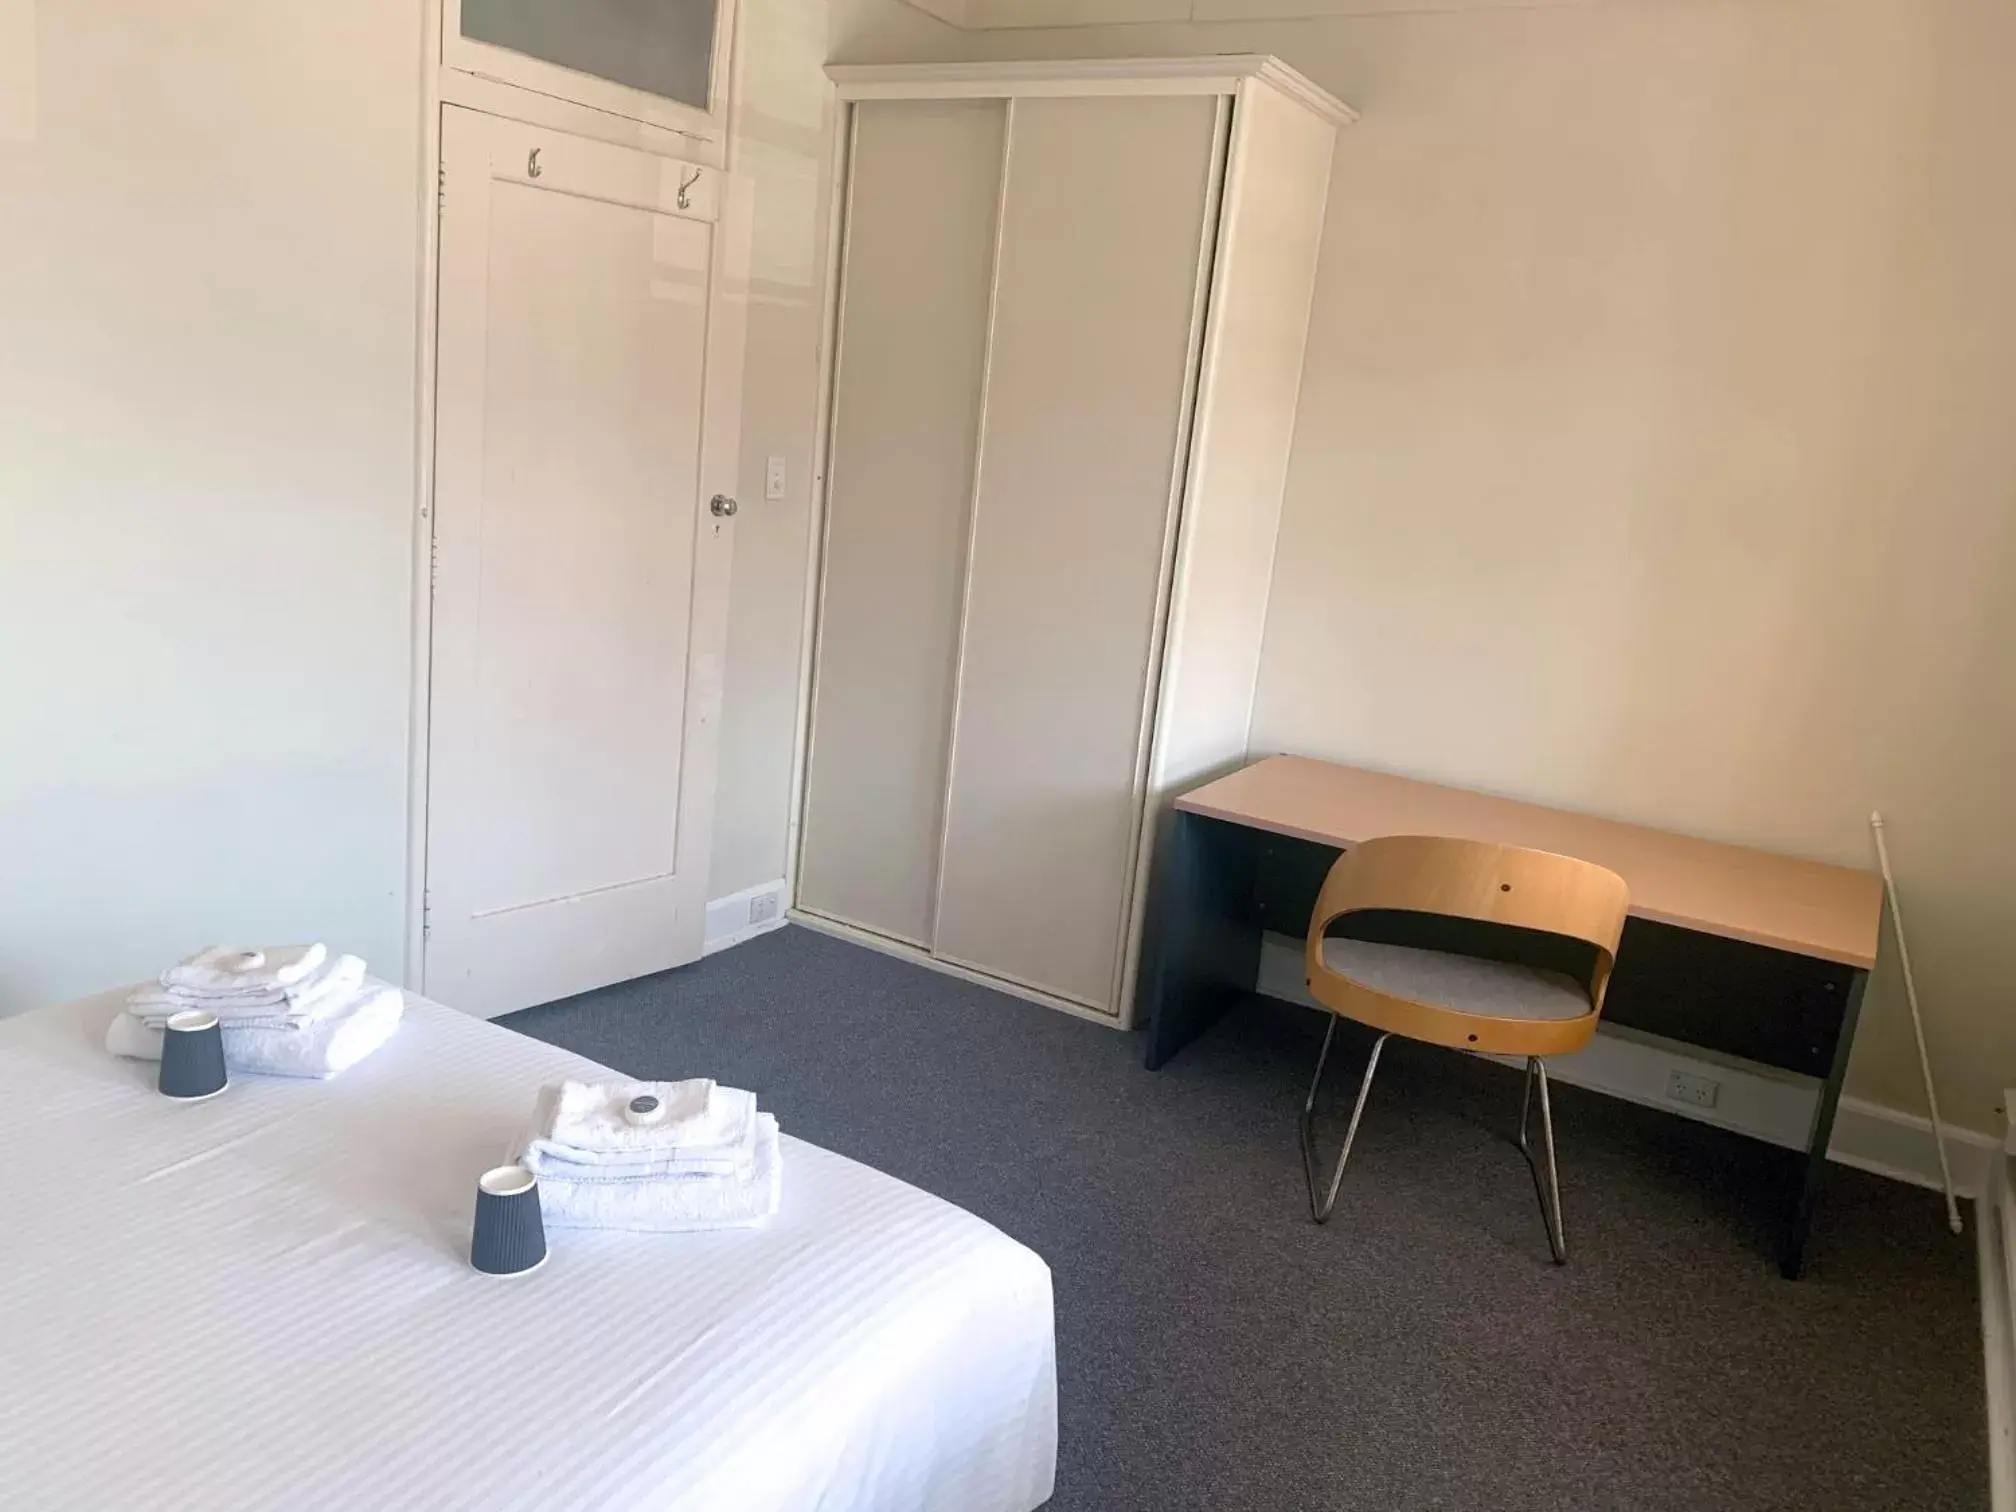 Bedroom in Port Macquarie Hotel